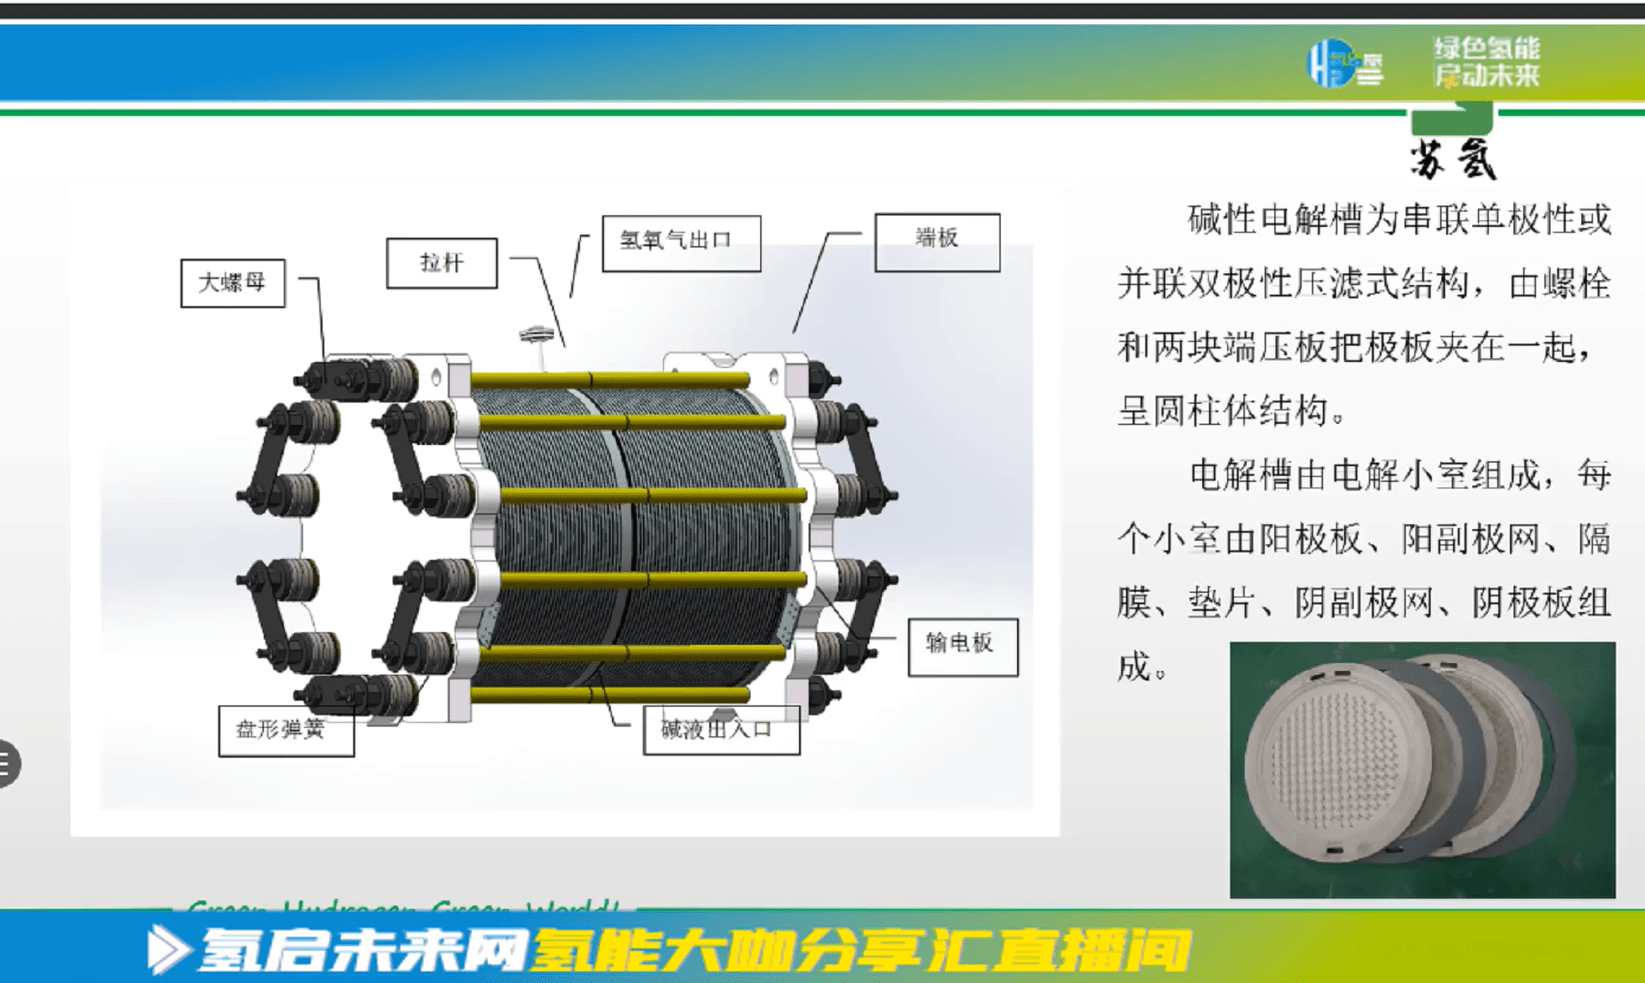 碱性电解槽:大规模生产绿氢的唯一关键设备